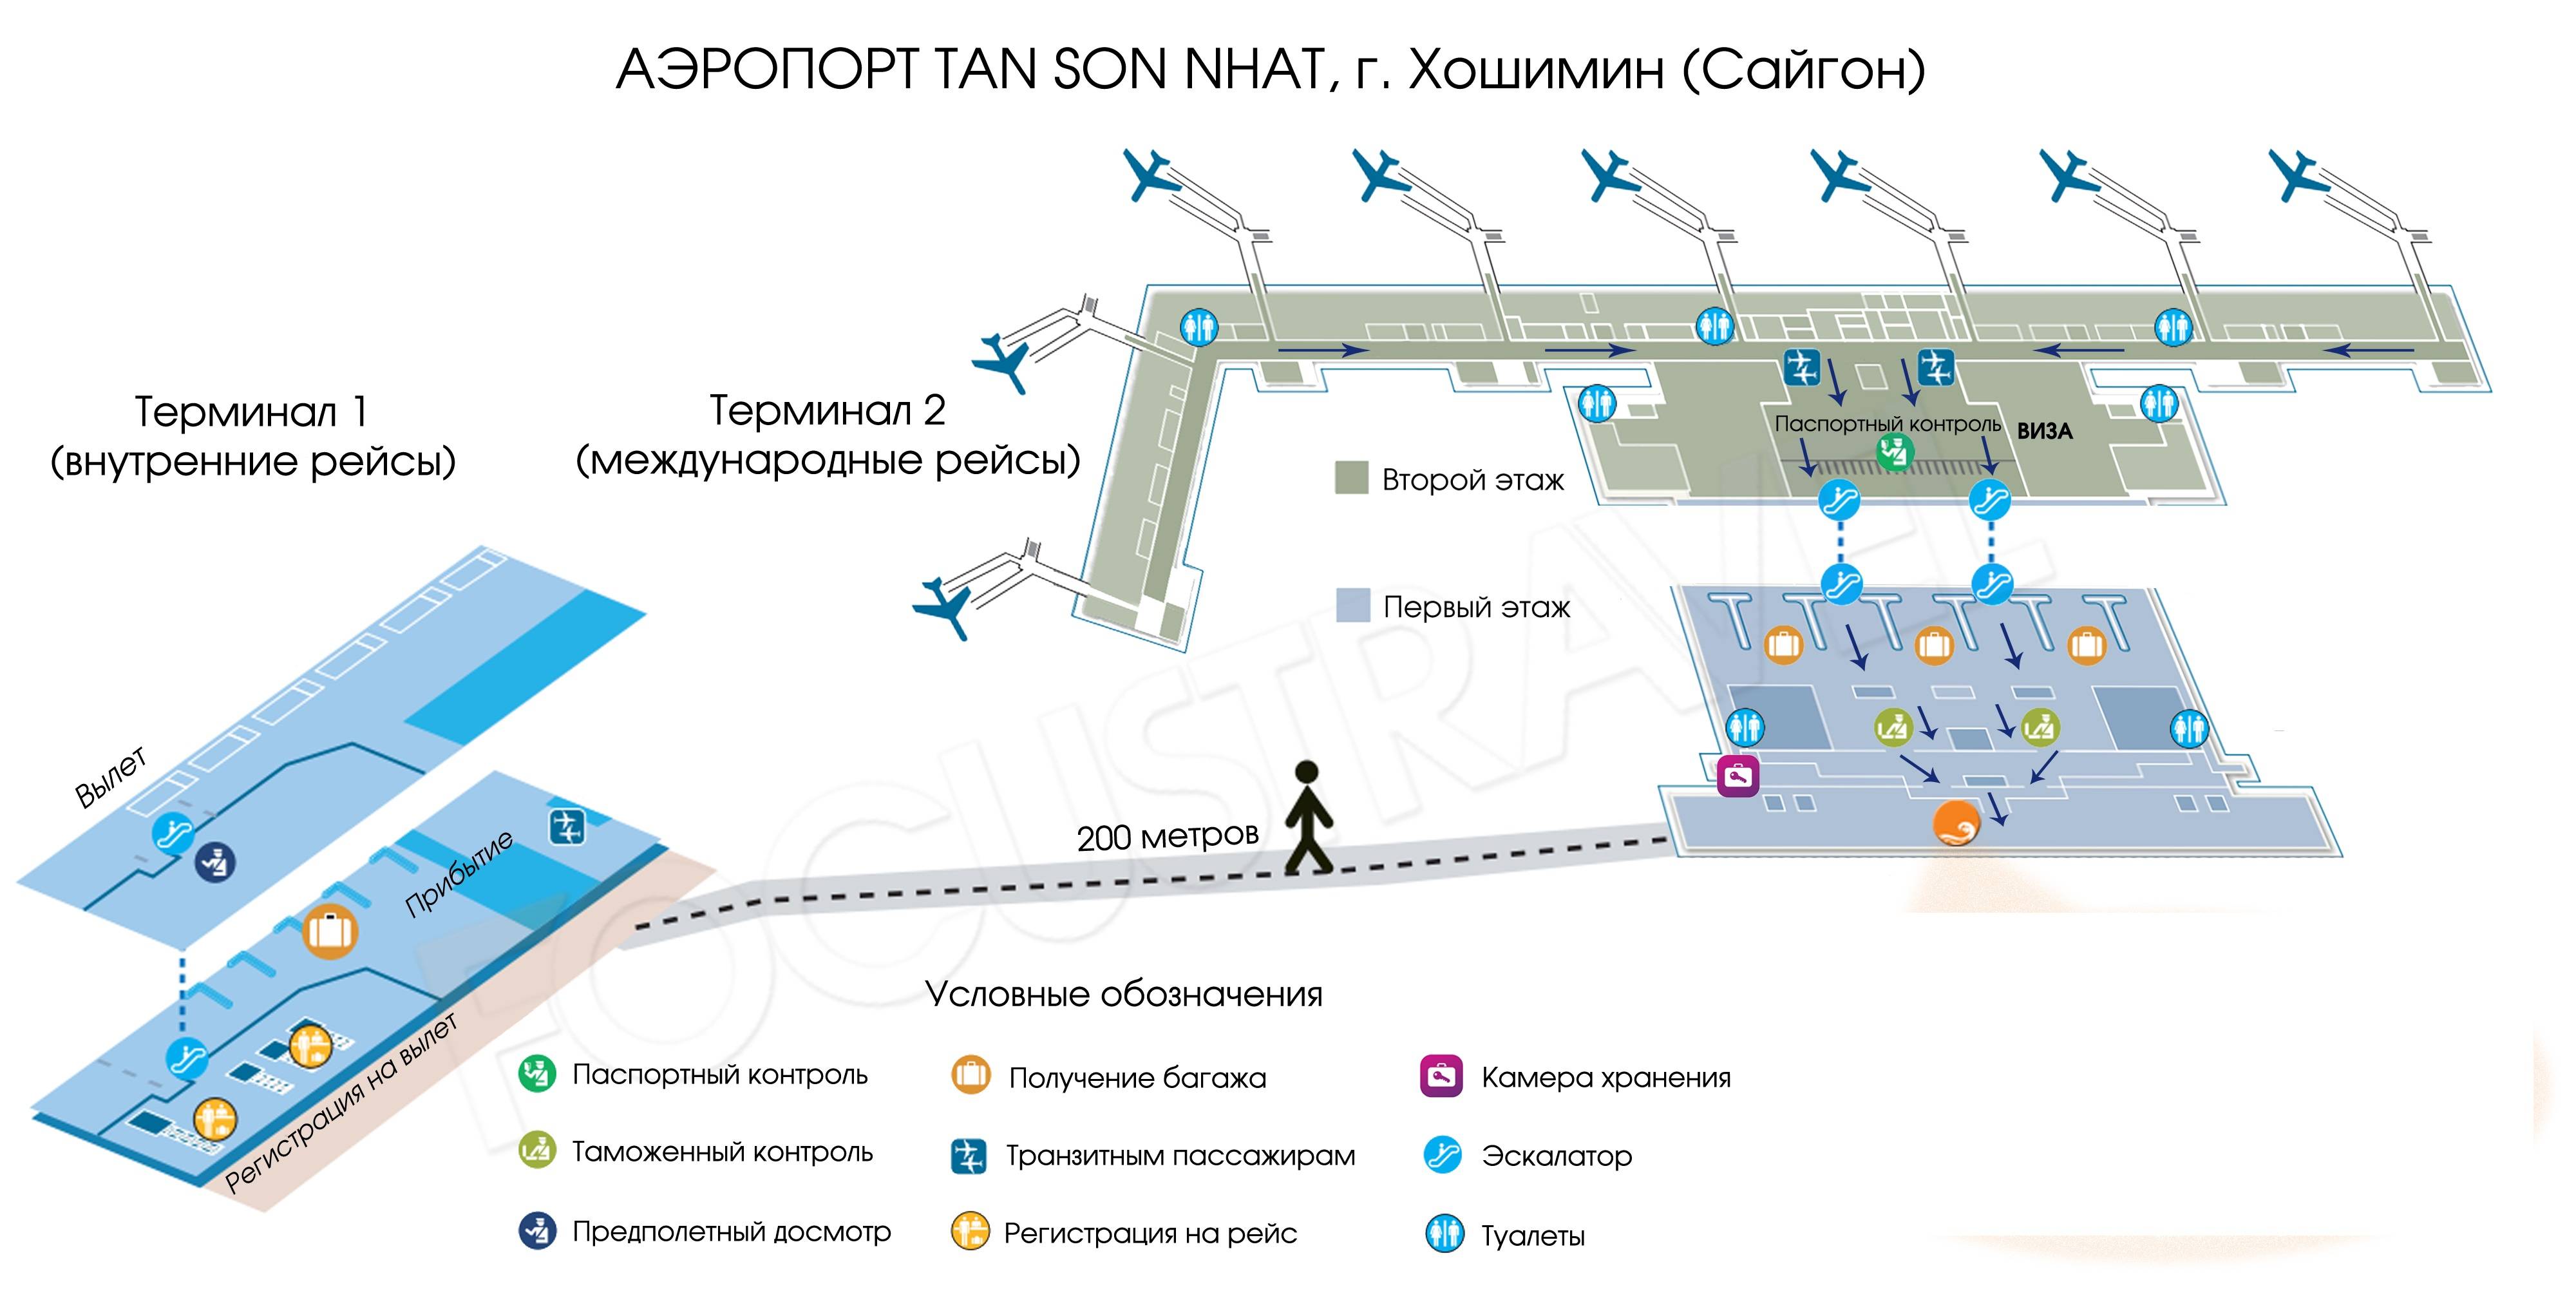 Аэропорт хабаровск онлайн табло вылета и прилета на сегодня, расписание рейсов, справочная